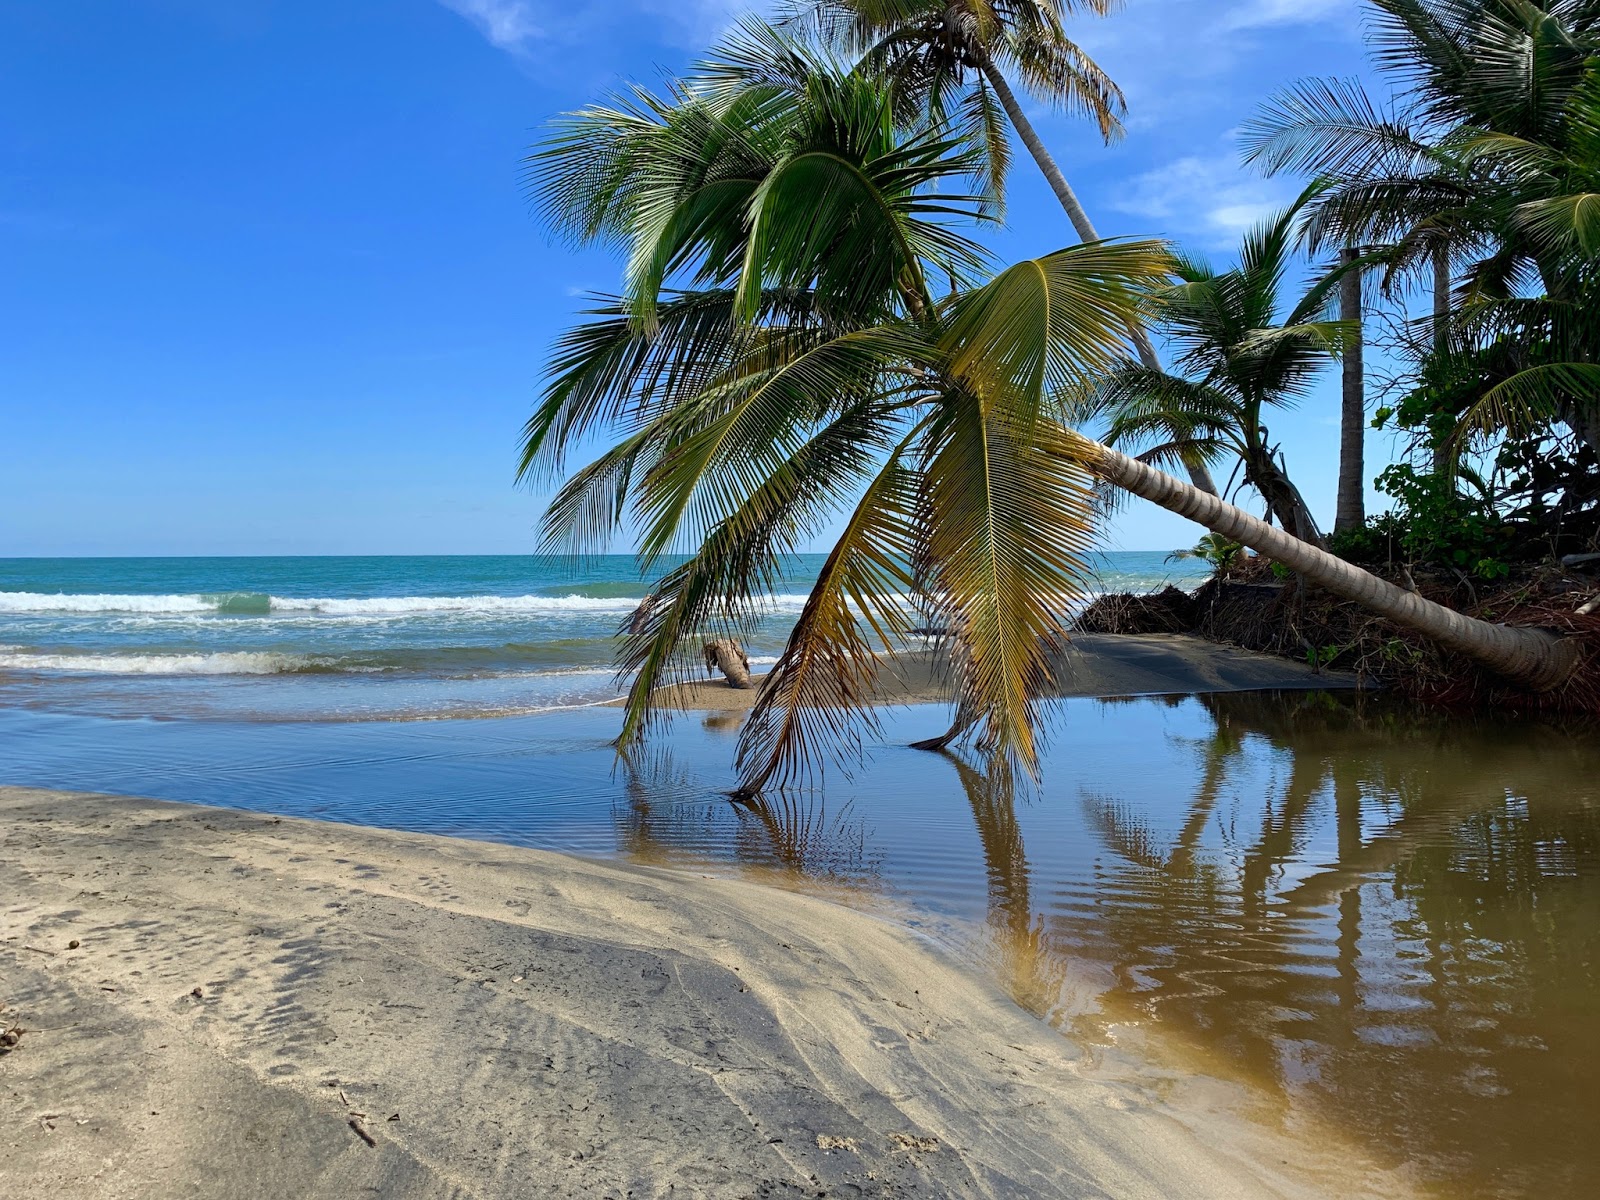 Photo de Playa Los Bohios - endroit populaire parmi les connaisseurs de la détente